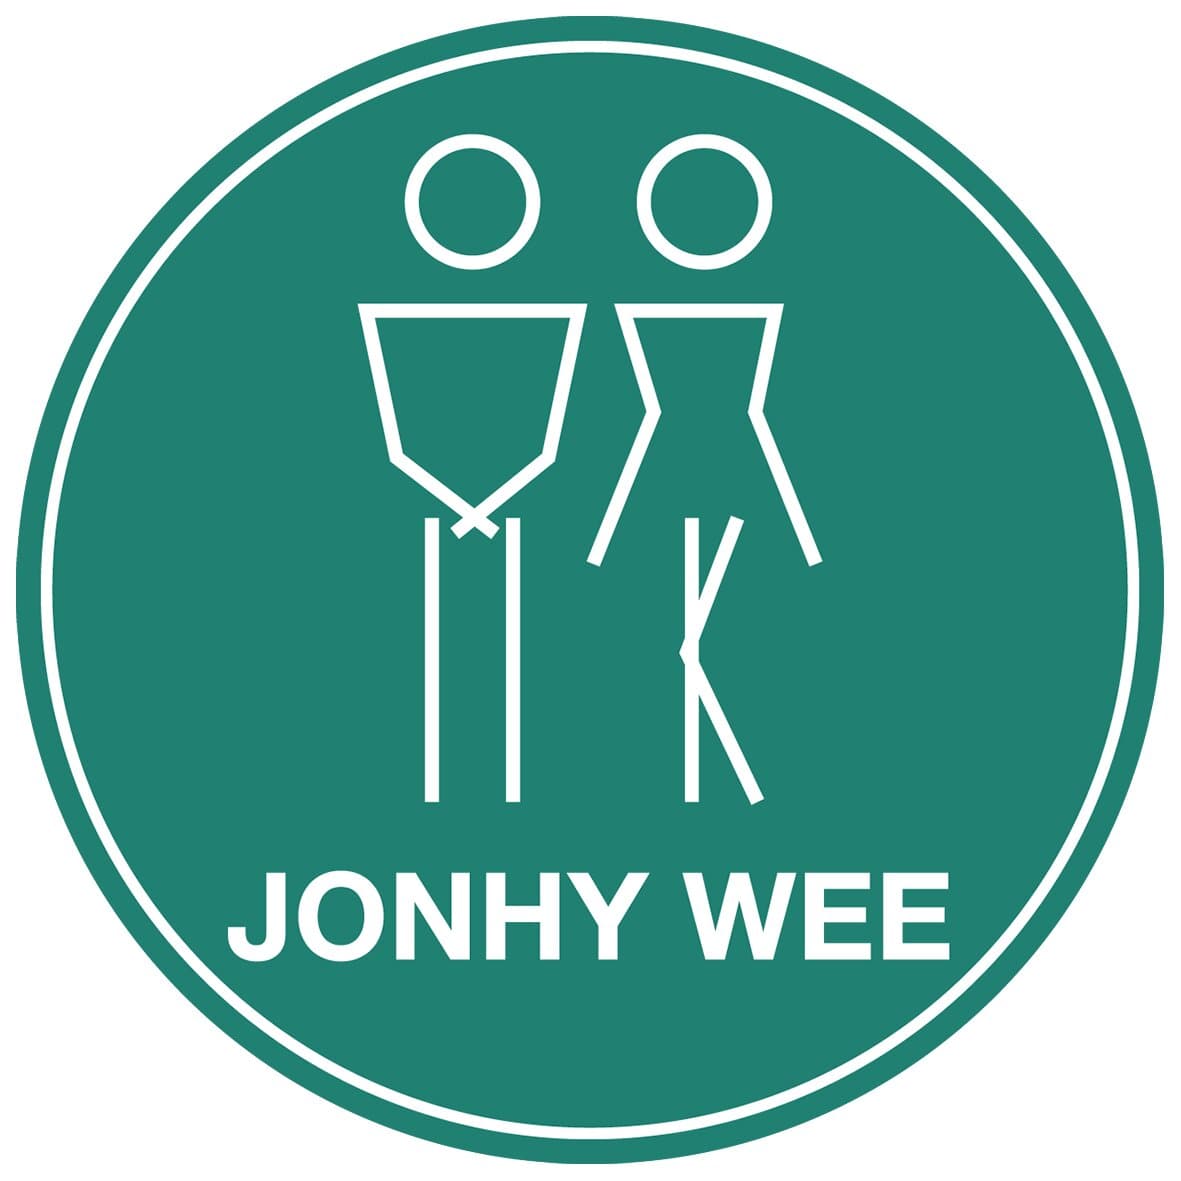 Jonhy Wee